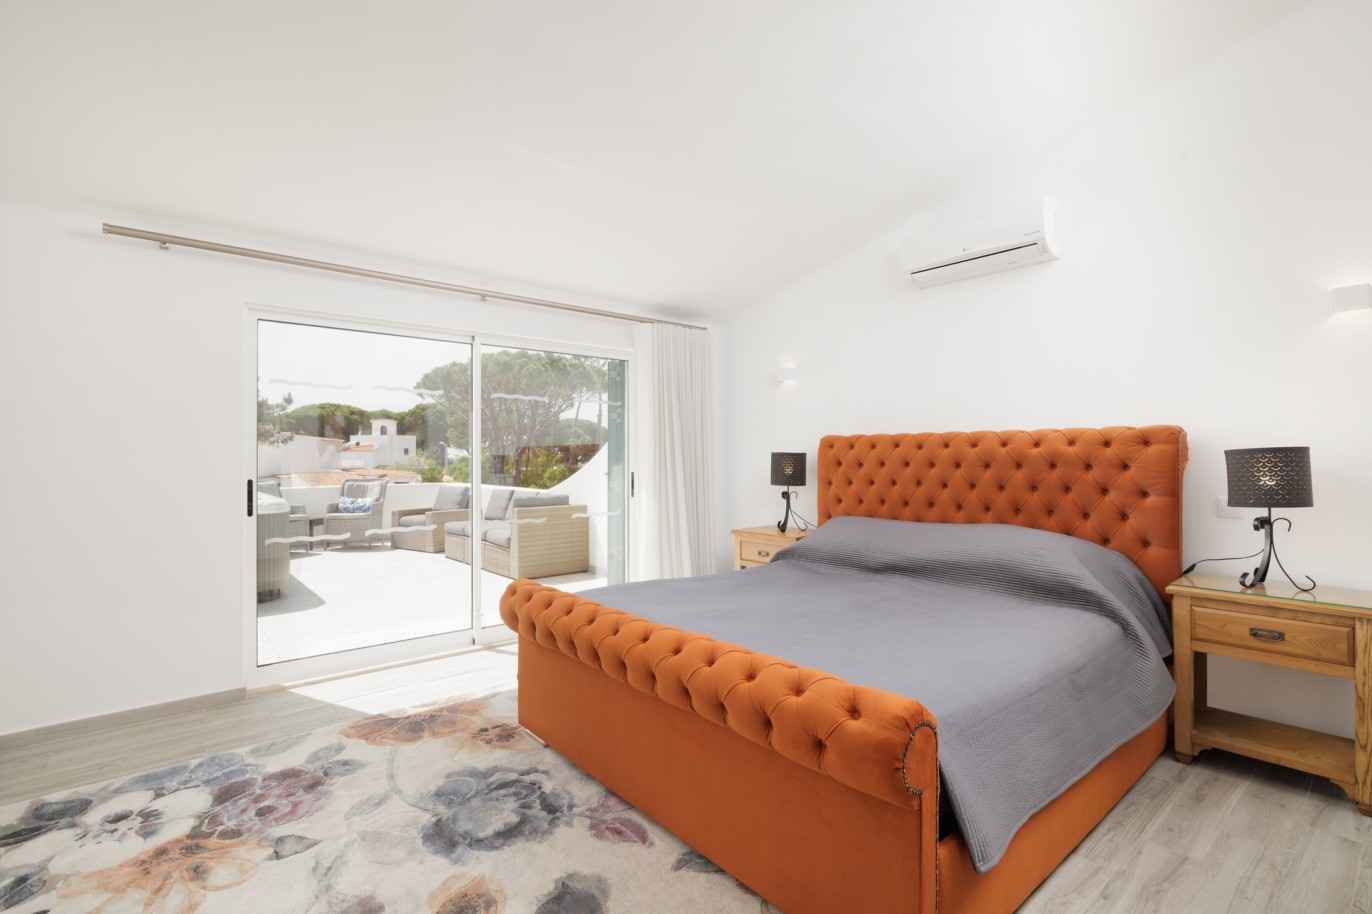 Moradia renovada de três quartos, para venda em Vale do Lobo, Algarve _222264